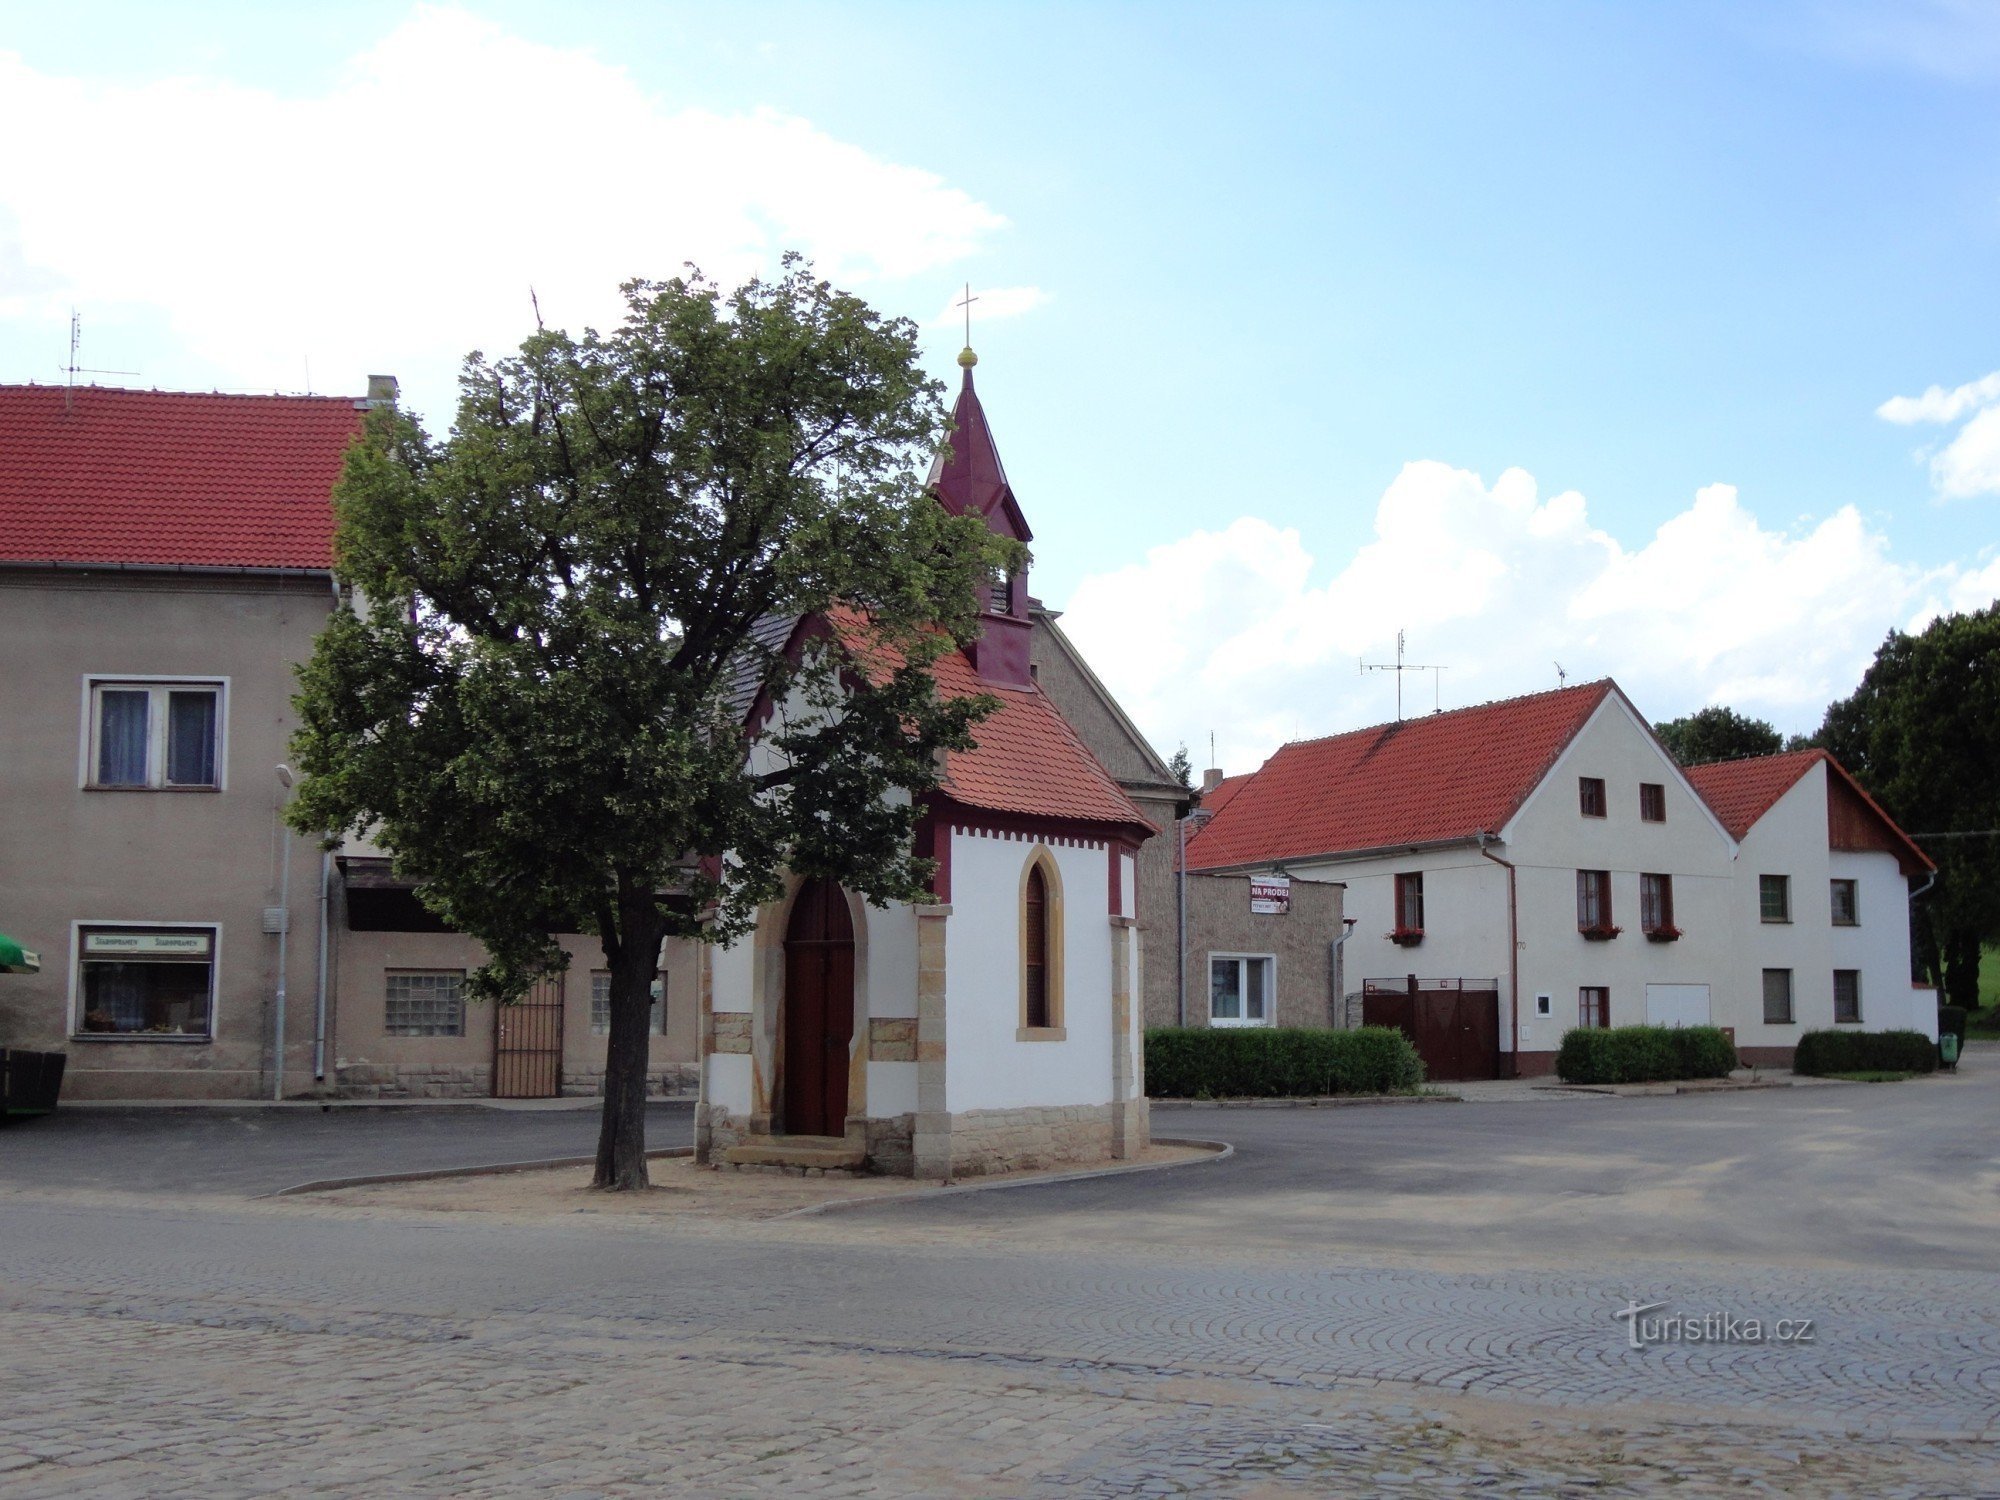 the tourist crossroads of Mšené Lázně